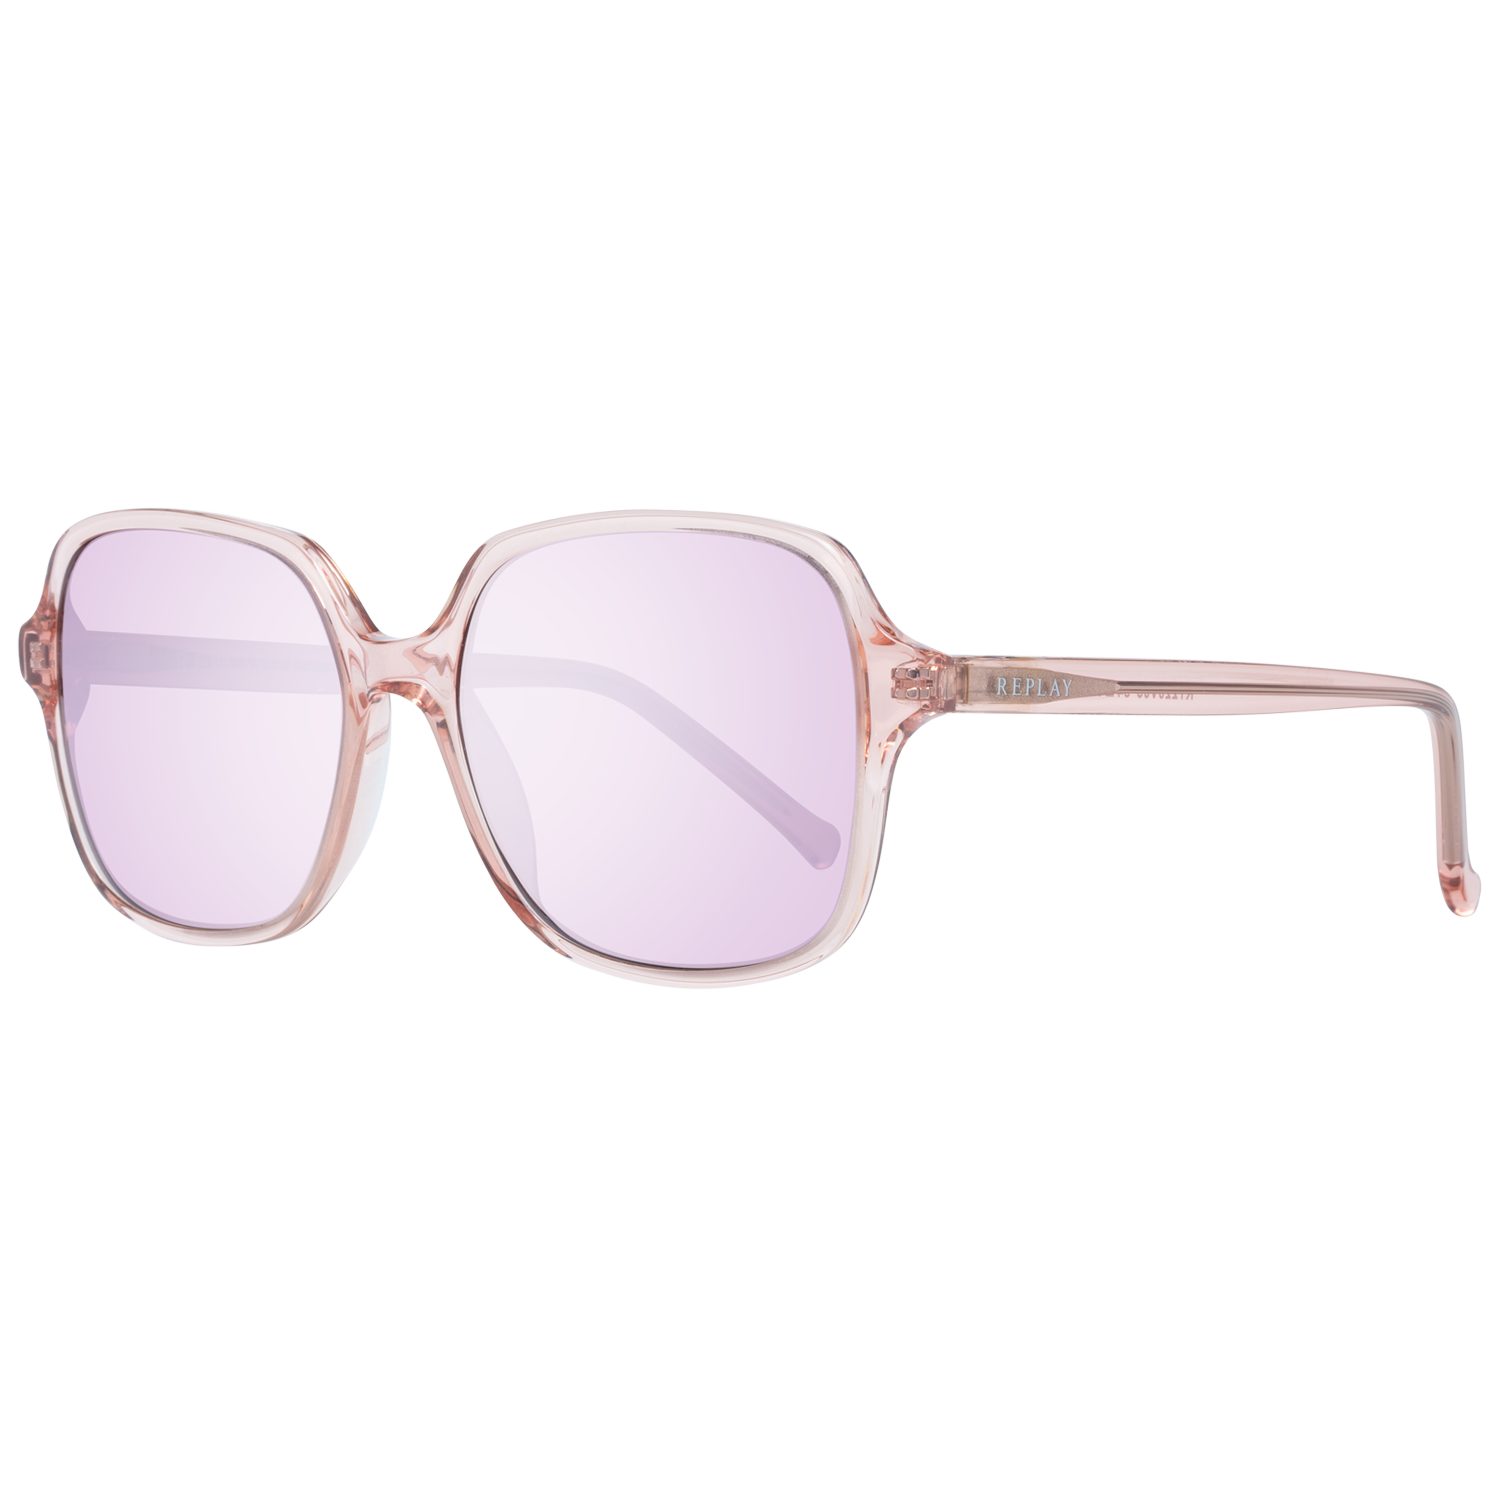 Replay Sonnenbrille »Replay Sonnenbrille RY220S S03 54 Sunglasses Farbe«  online kaufen | OTTO